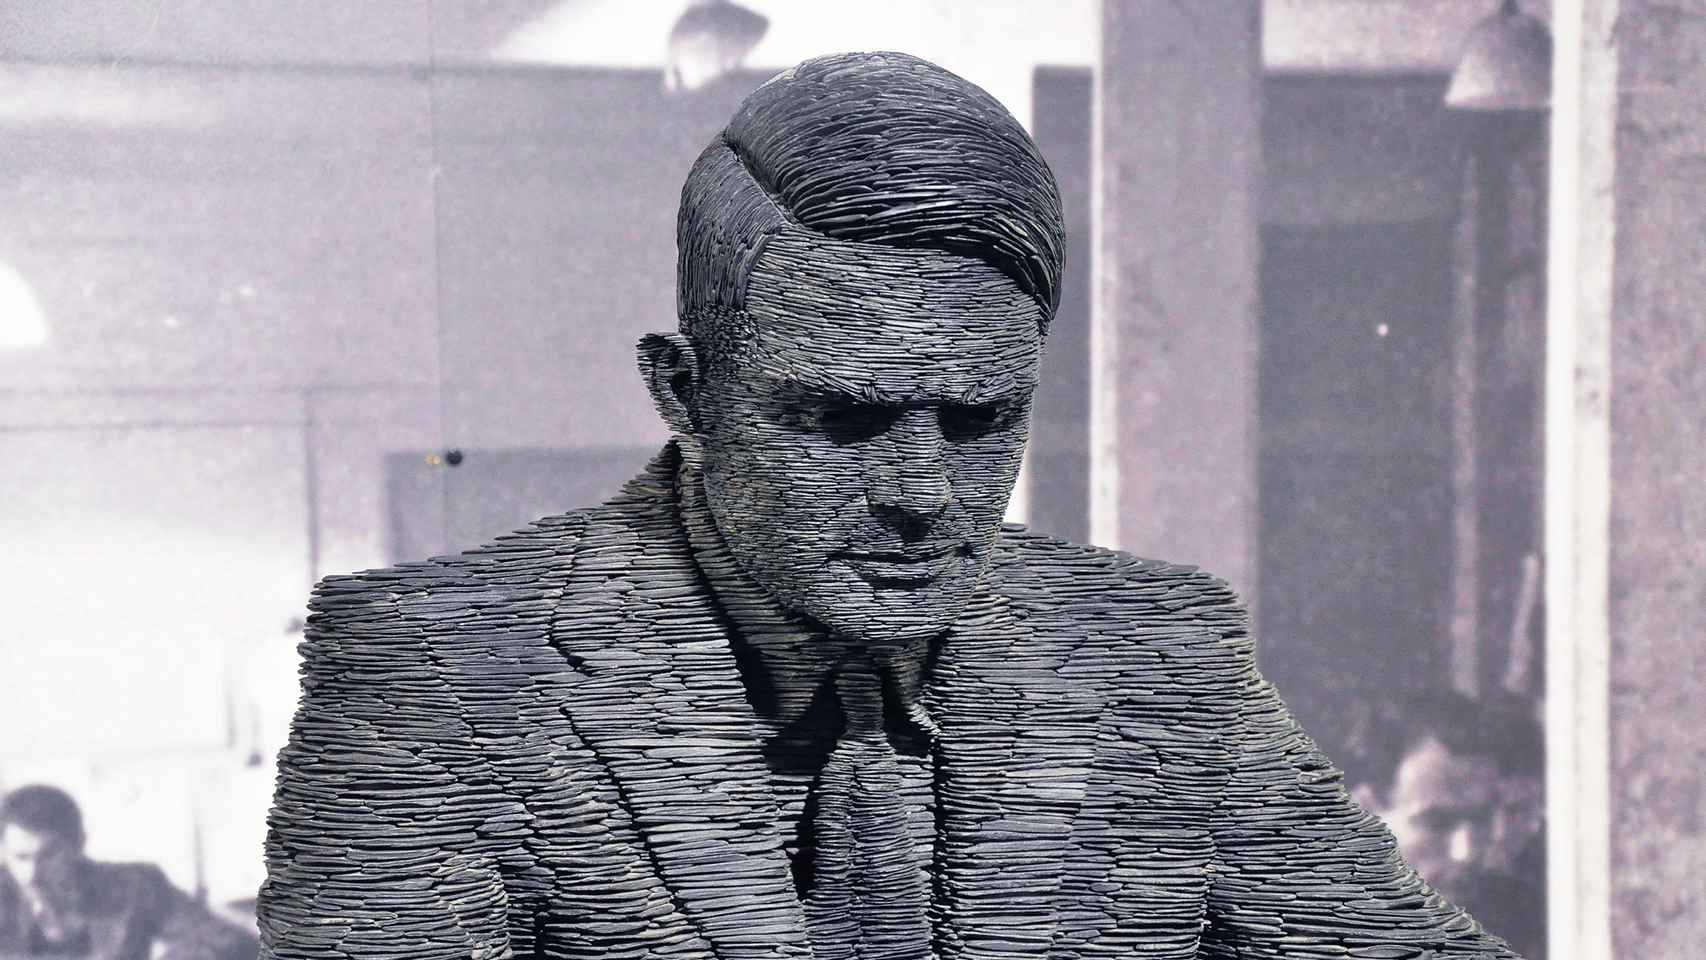 Escultura en pizarra de Alan Turing, creada por Stephen Kettle, en Bletchley Park, Inglaterra.